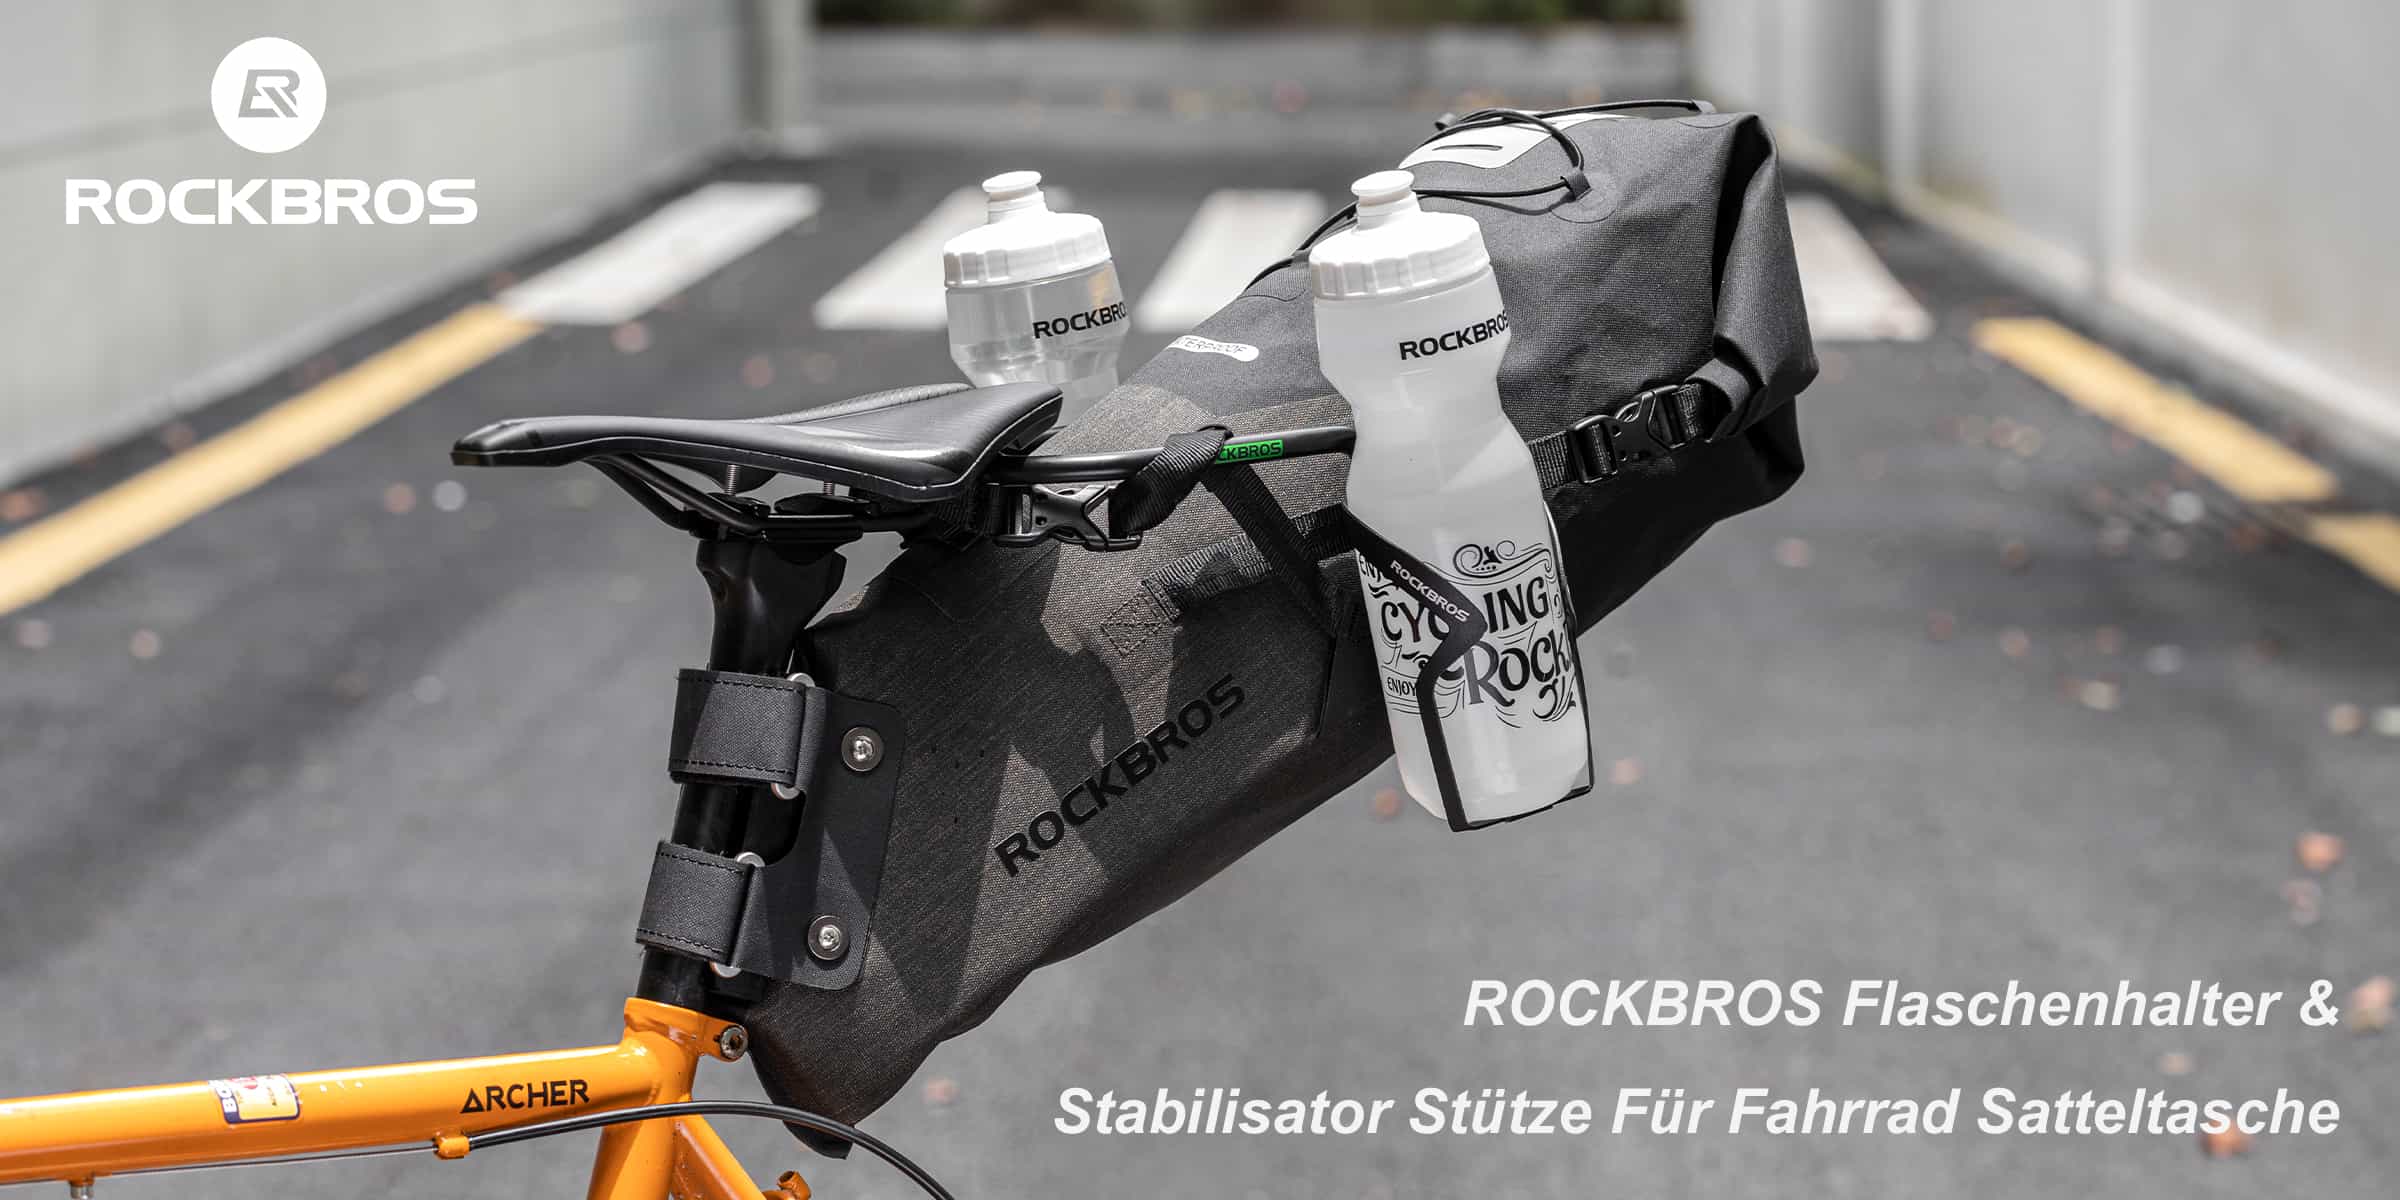 ROCKBROS Flaschenhalter & Stabilisator Stütze für Fahrrad Satteltasche